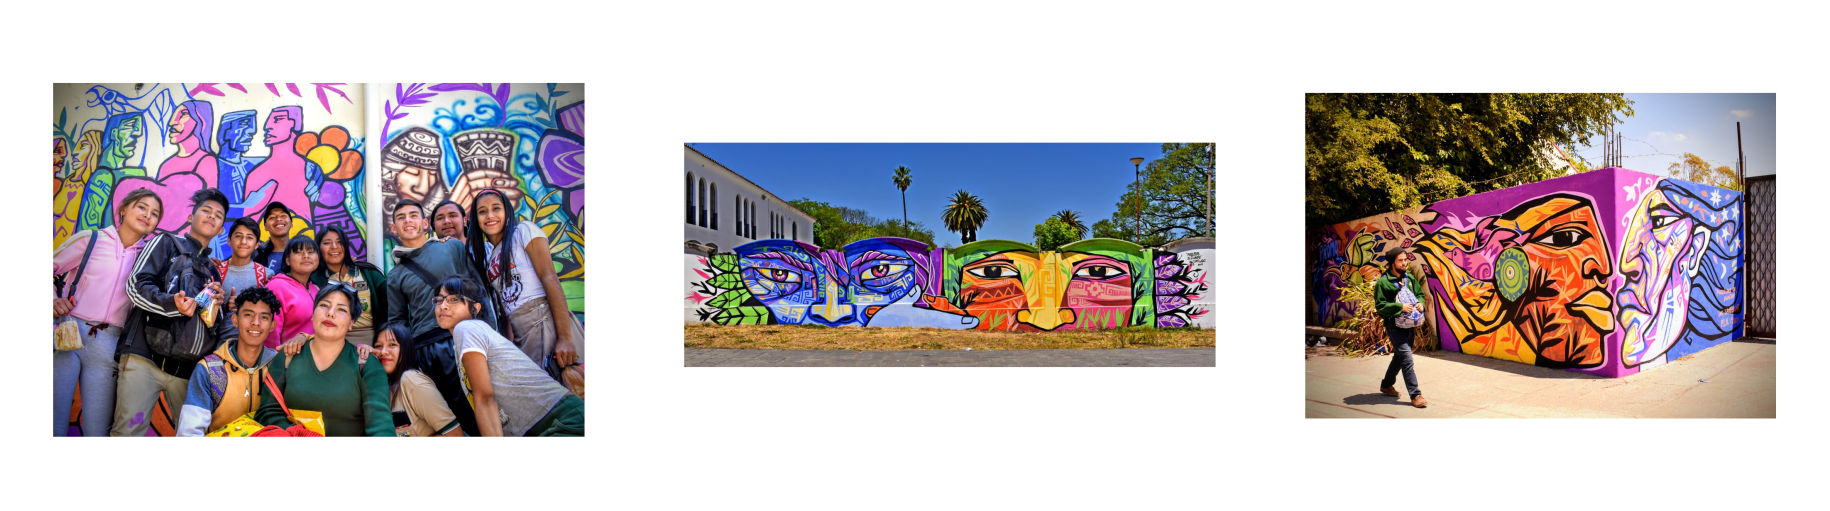 Un mosaico muestra tres imágenes: una de jóvenes que sonríen alegremente delante de su mural; la segunda muestra un mural de dos rostros de vivos colores, y la tercera, un joven que pasa junto a un mural de dos personas de vivos colores.